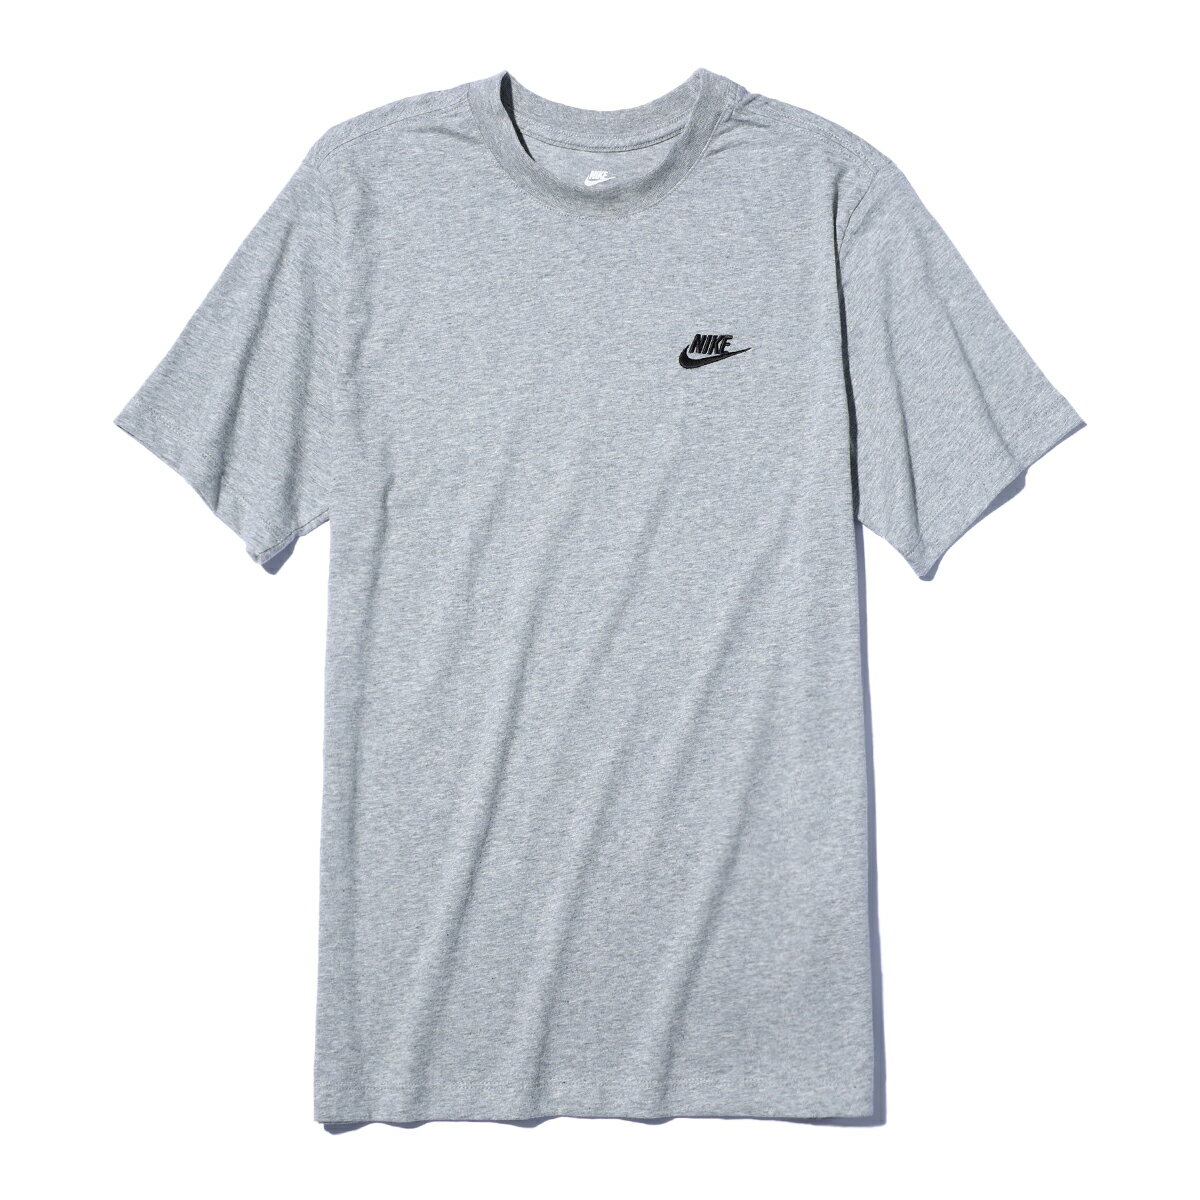 NIKE クラブ Tシャツ(ダークグレーヘザー/ブラック)(ナイキ スポーツウェア クラブ メンズ Tシャツ)